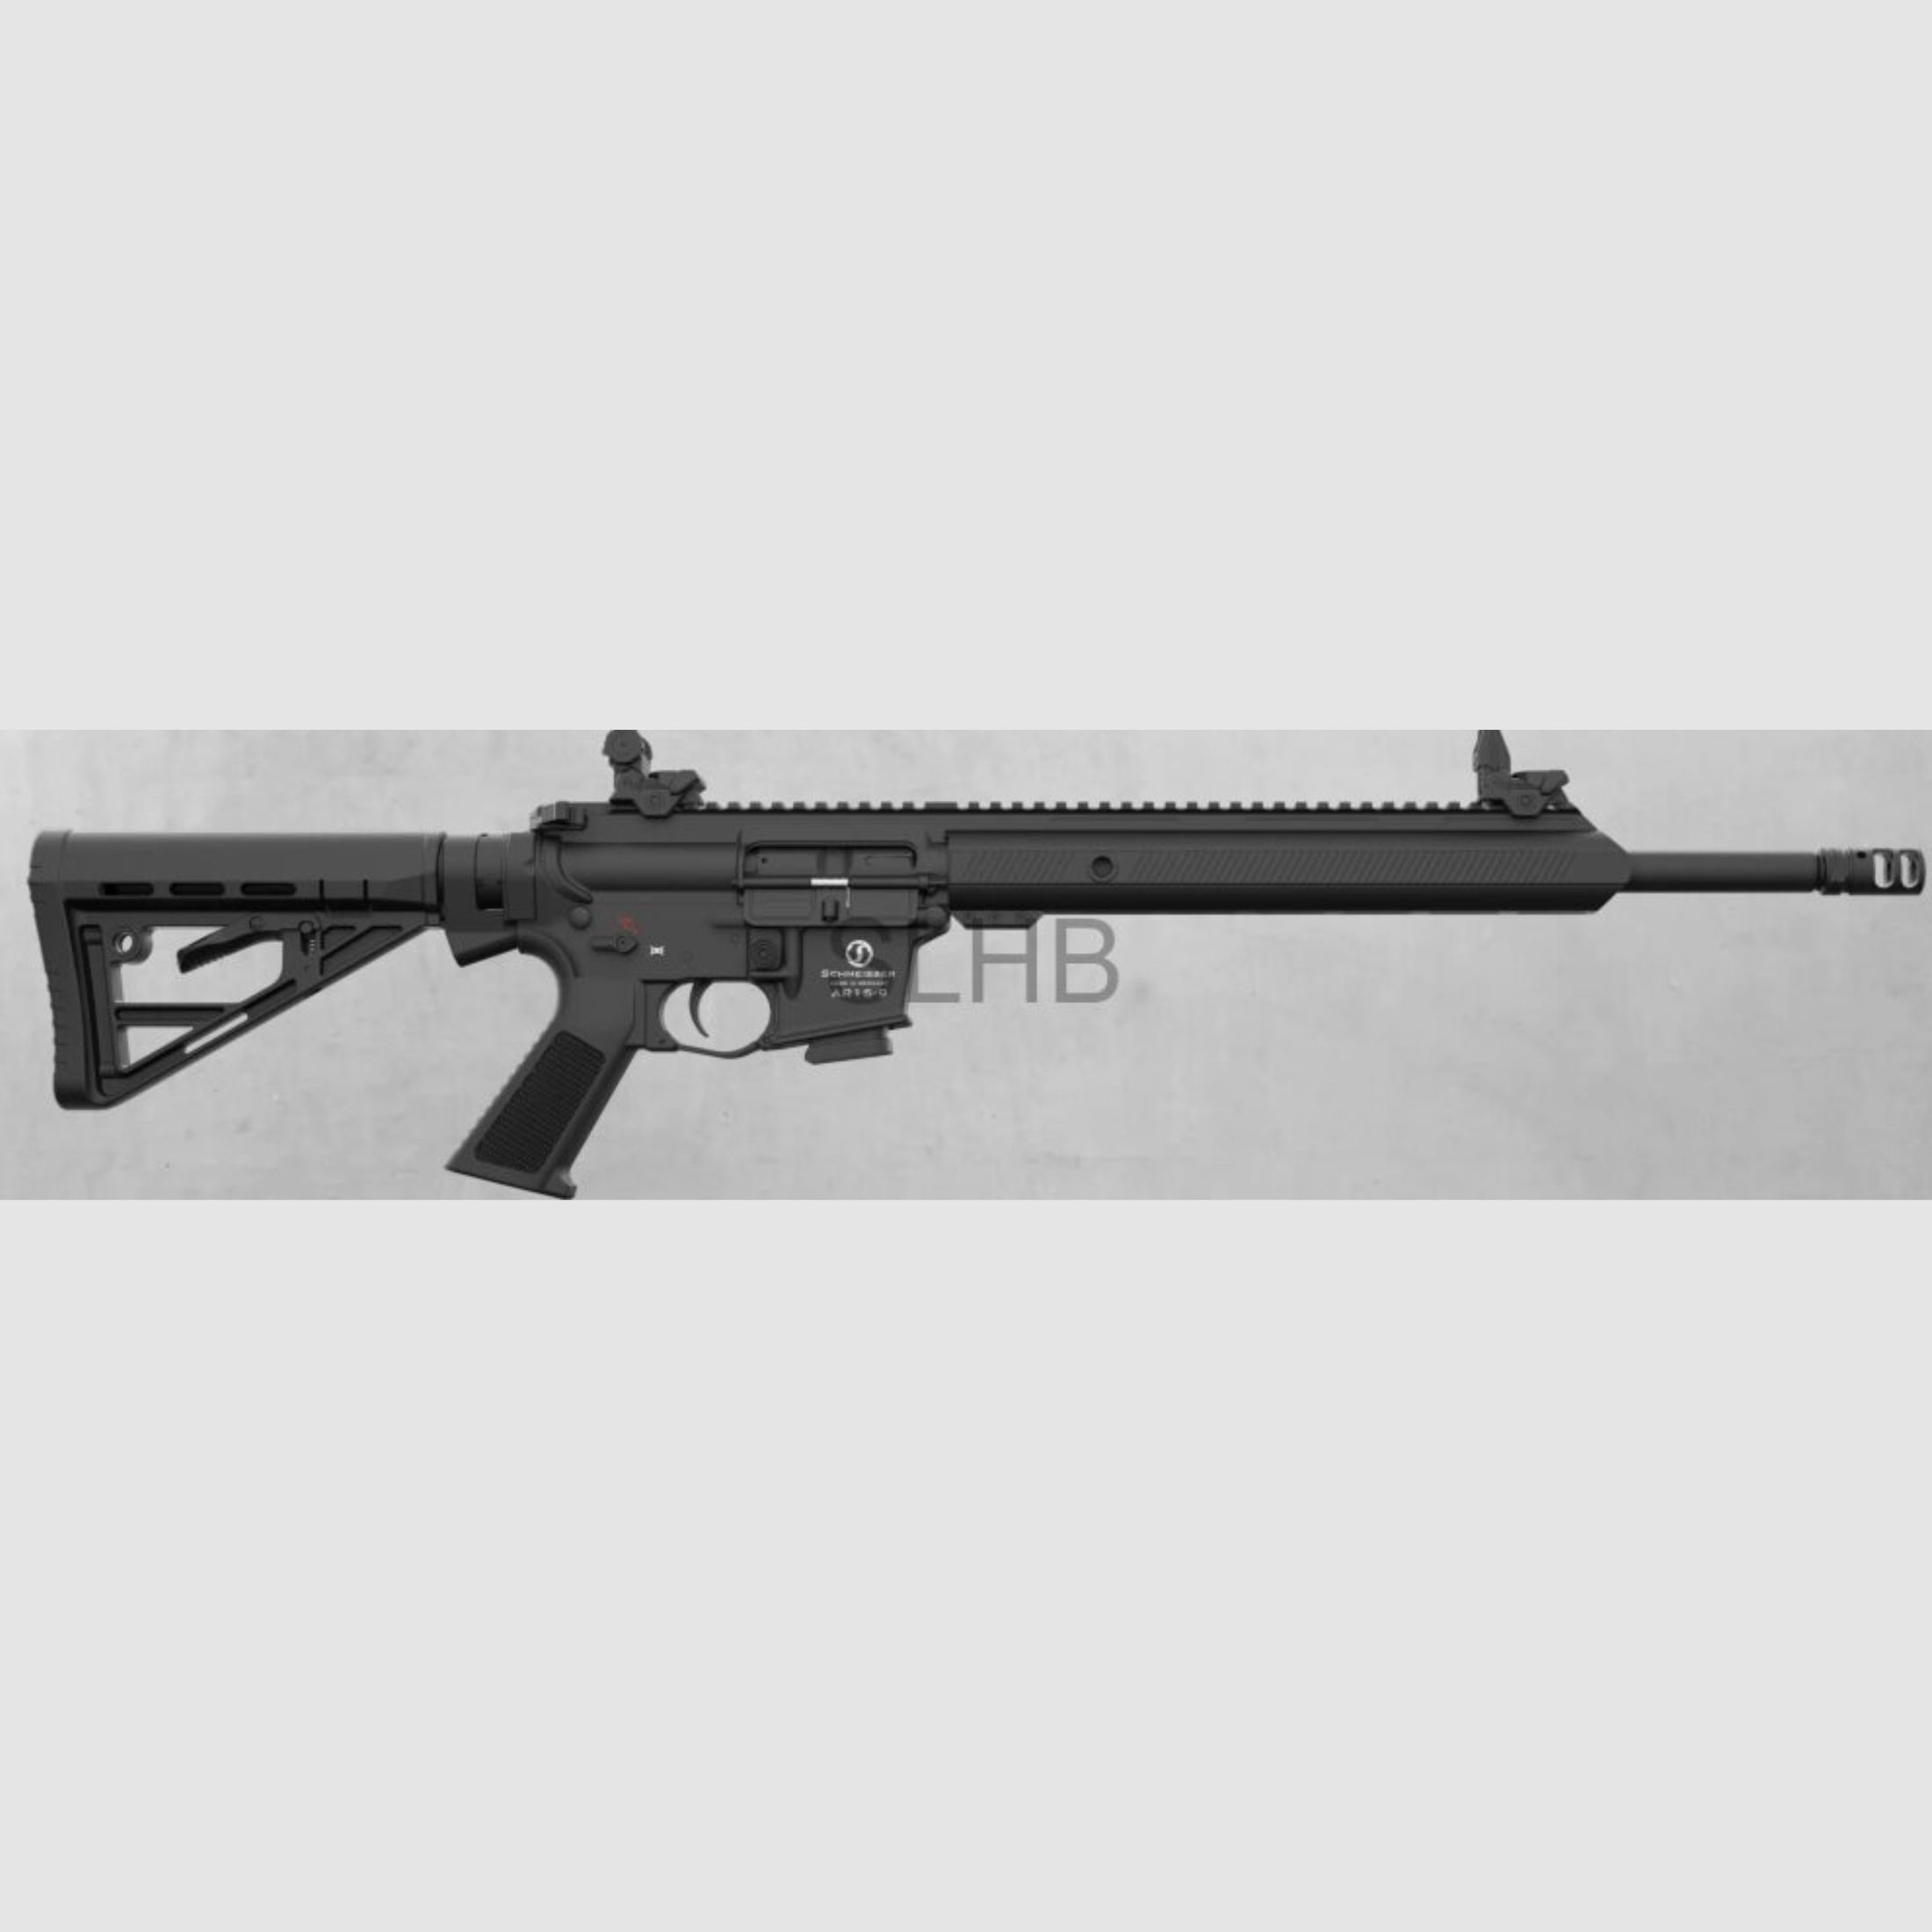 Schmeisser AR15 9mm Sport L (16,75')